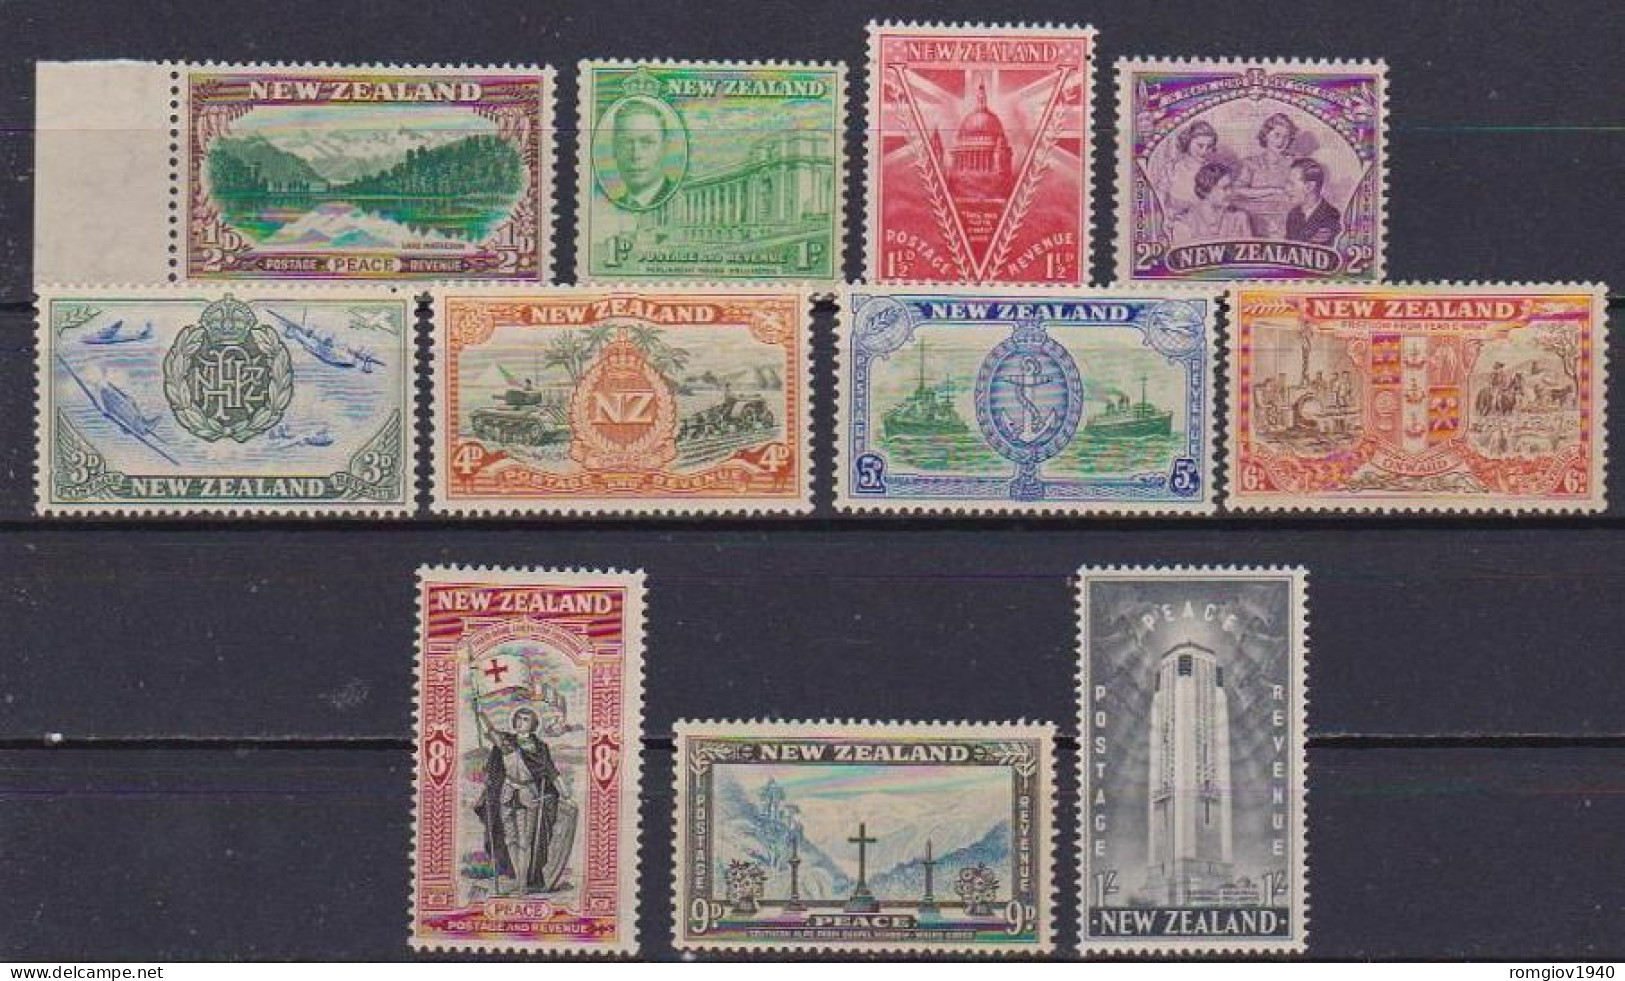 NUOVA ZELANDA  1945  ANNIVERSARIO DELLA VITTORIA  UNIF. 323-333  MNH XF++++++++++++++++++++++++ - Unused Stamps